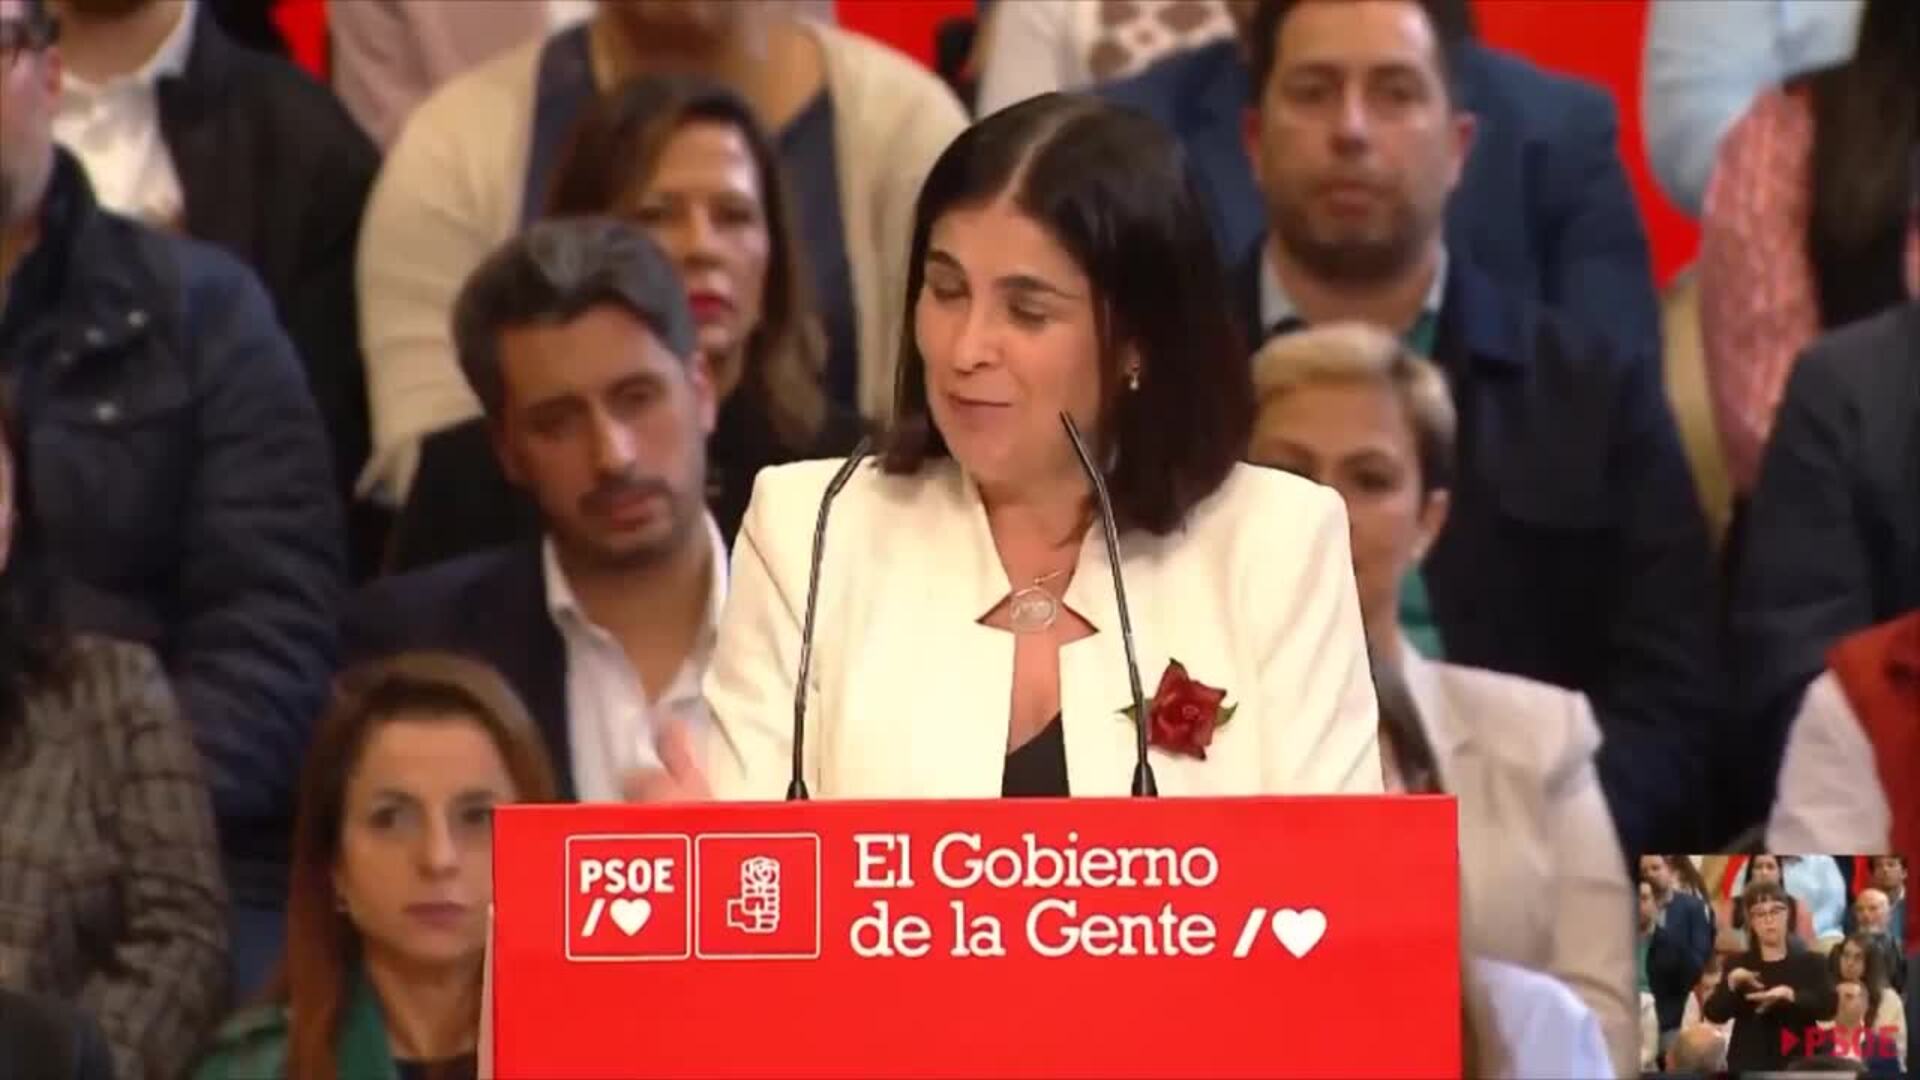 Darias destaca que España "avanza" y "progresa" gracias al PSOE y al Gobierno de Sánchez